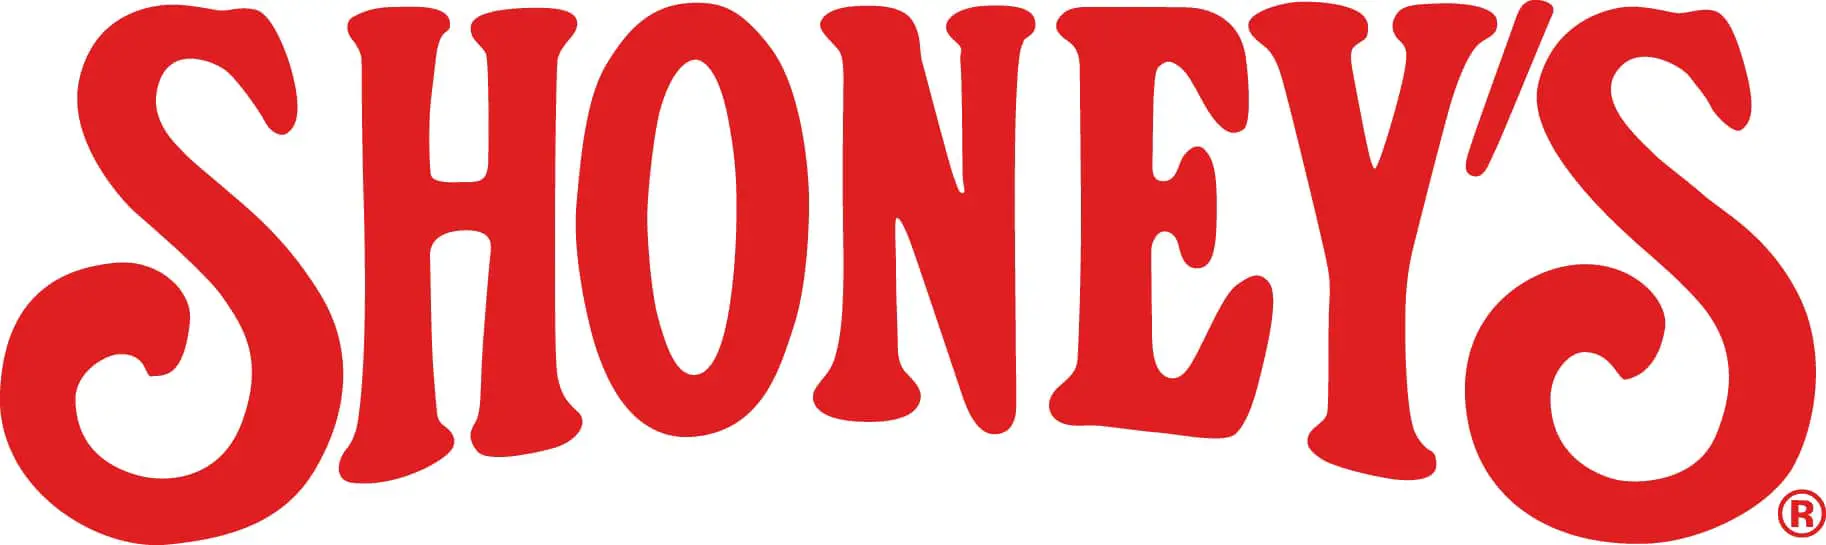 logotipo de Shoney